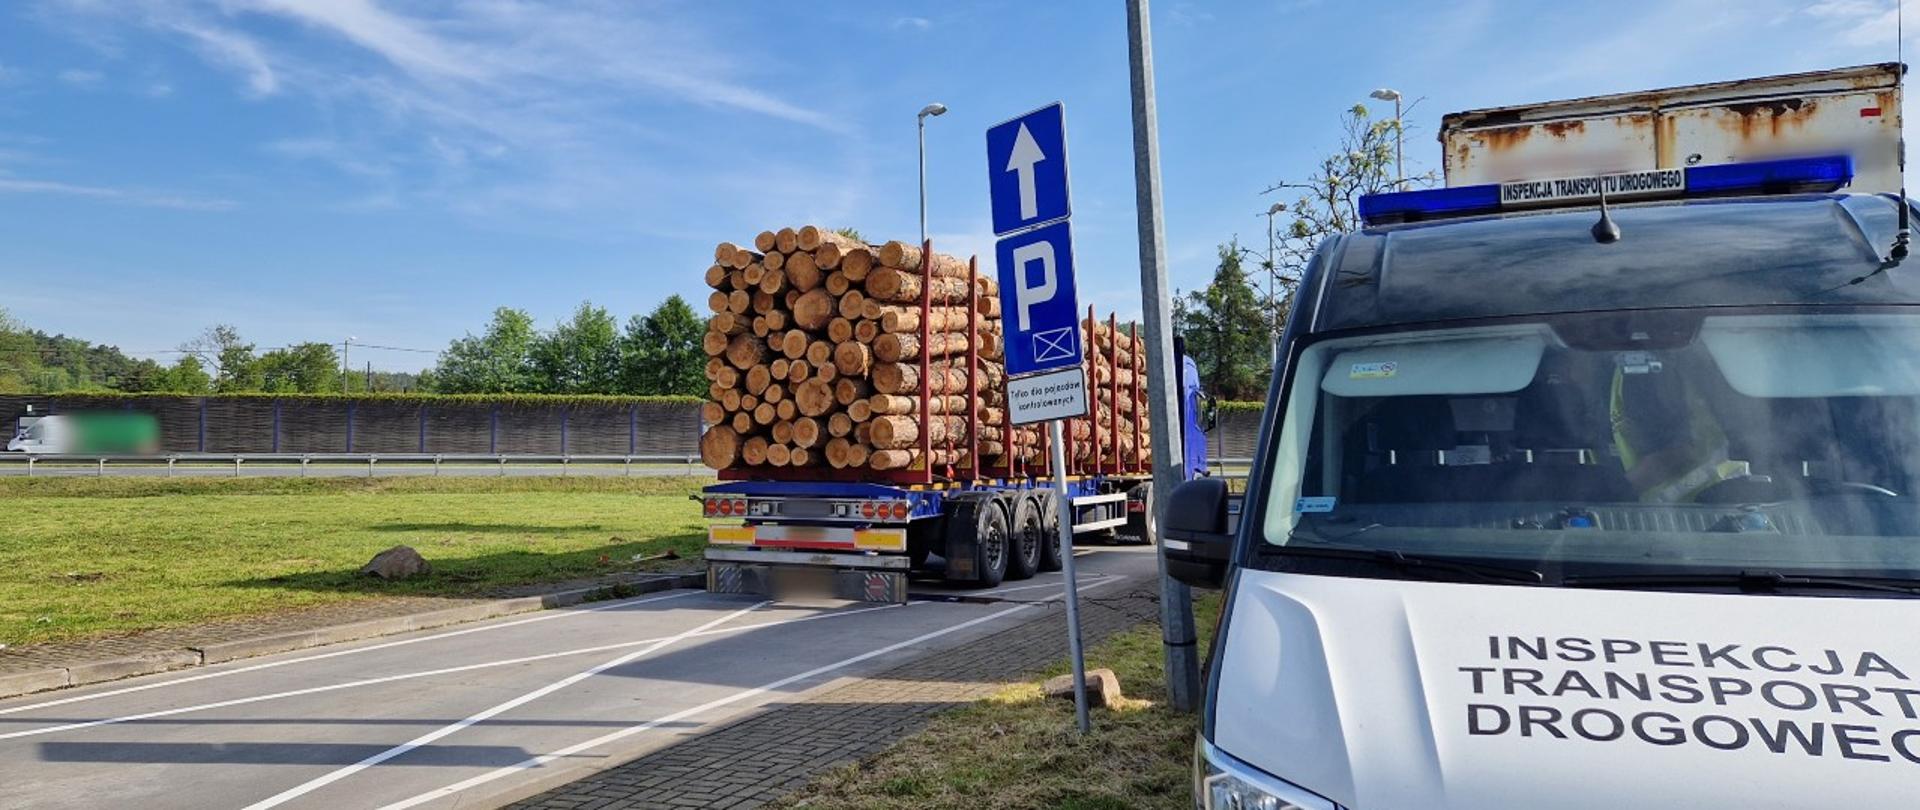 Na pierwszym planie (od prawej): przód oznakowanego furgonu małopolskiej Inspekcji Transportu Drogowego. W tle: ciągnik siodłowy z podpiętą naczepą kłonicową i przewożonym nadmiarem kłód drewna stoi tuż za wagami inspekcyjnymi.